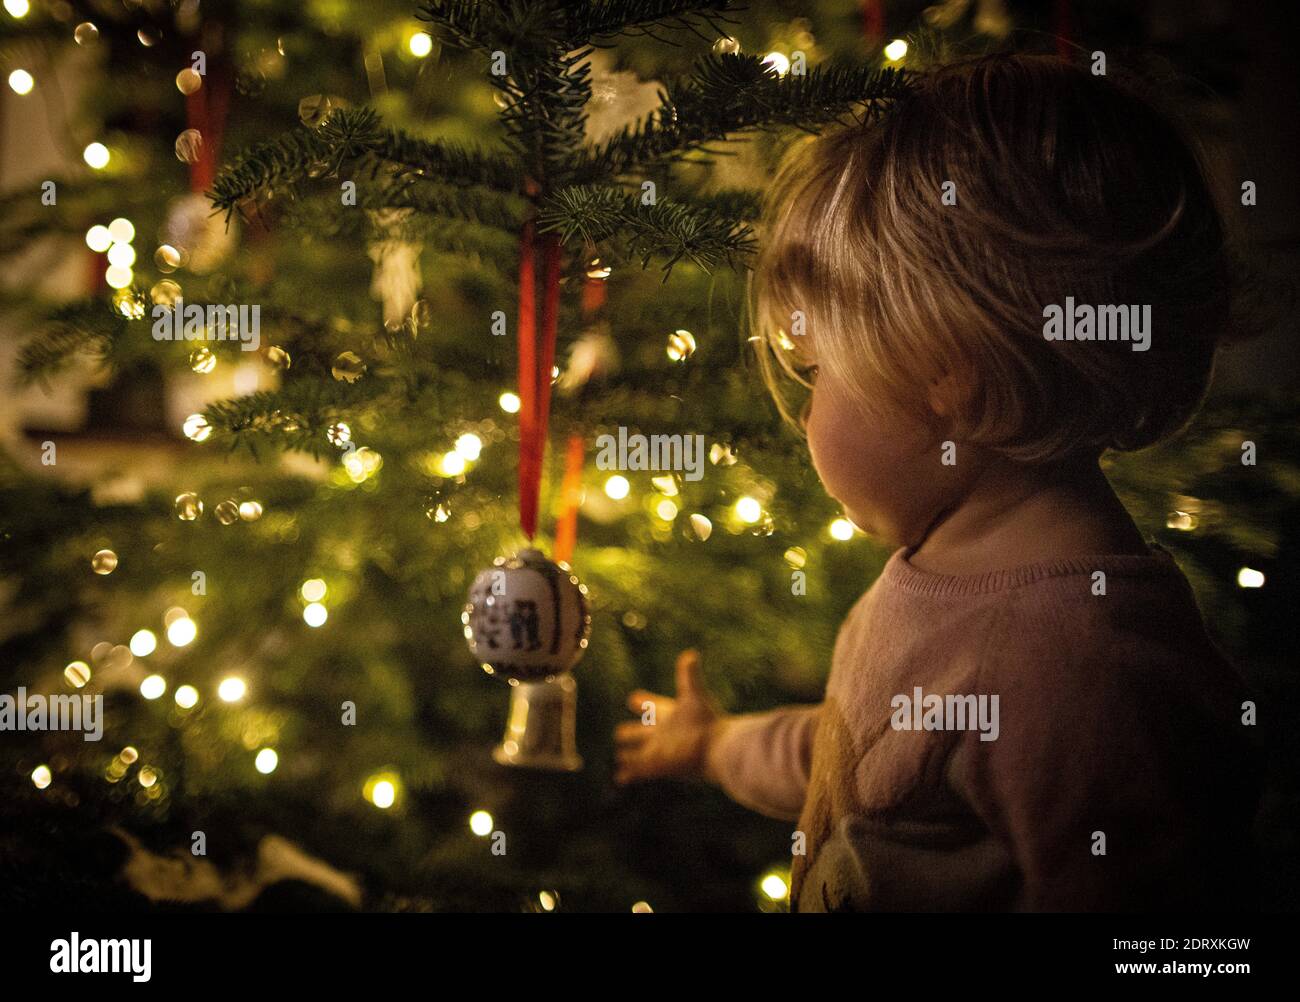 Die 16 Monate alte Emilia (1) bewundert den Weihnachtsbaum, der mit Hutschenreutherkugeln geschmückt ist, bei ihren Großeltern andächtig. 16-month-old Stock Photo